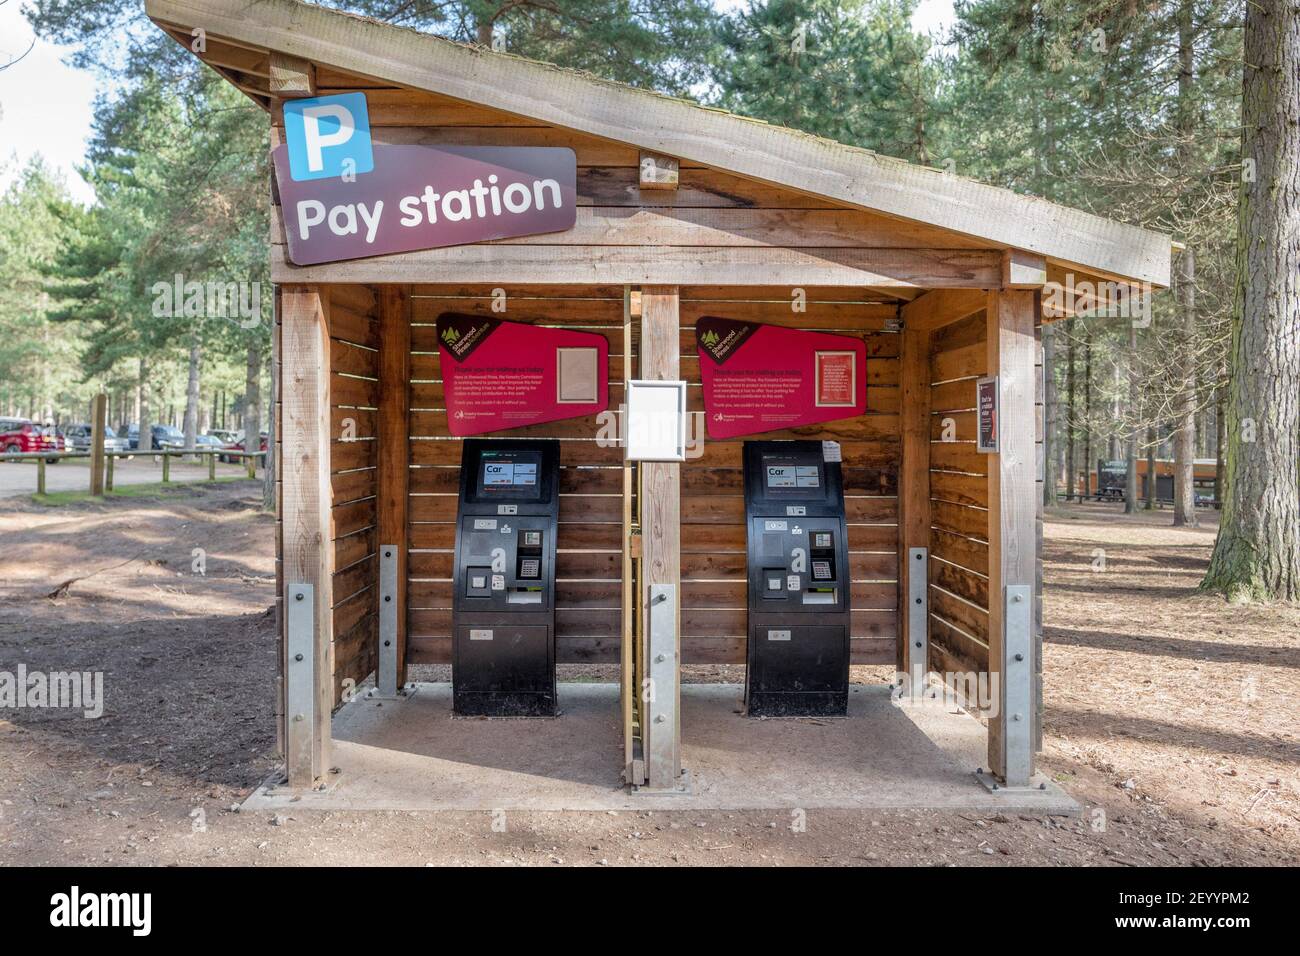 Machines de poste de paiement de véhicule au centre d'aventure Sherwood Pines de la commission forestière, Sherwood Forest, Nottingham. Banque D'Images